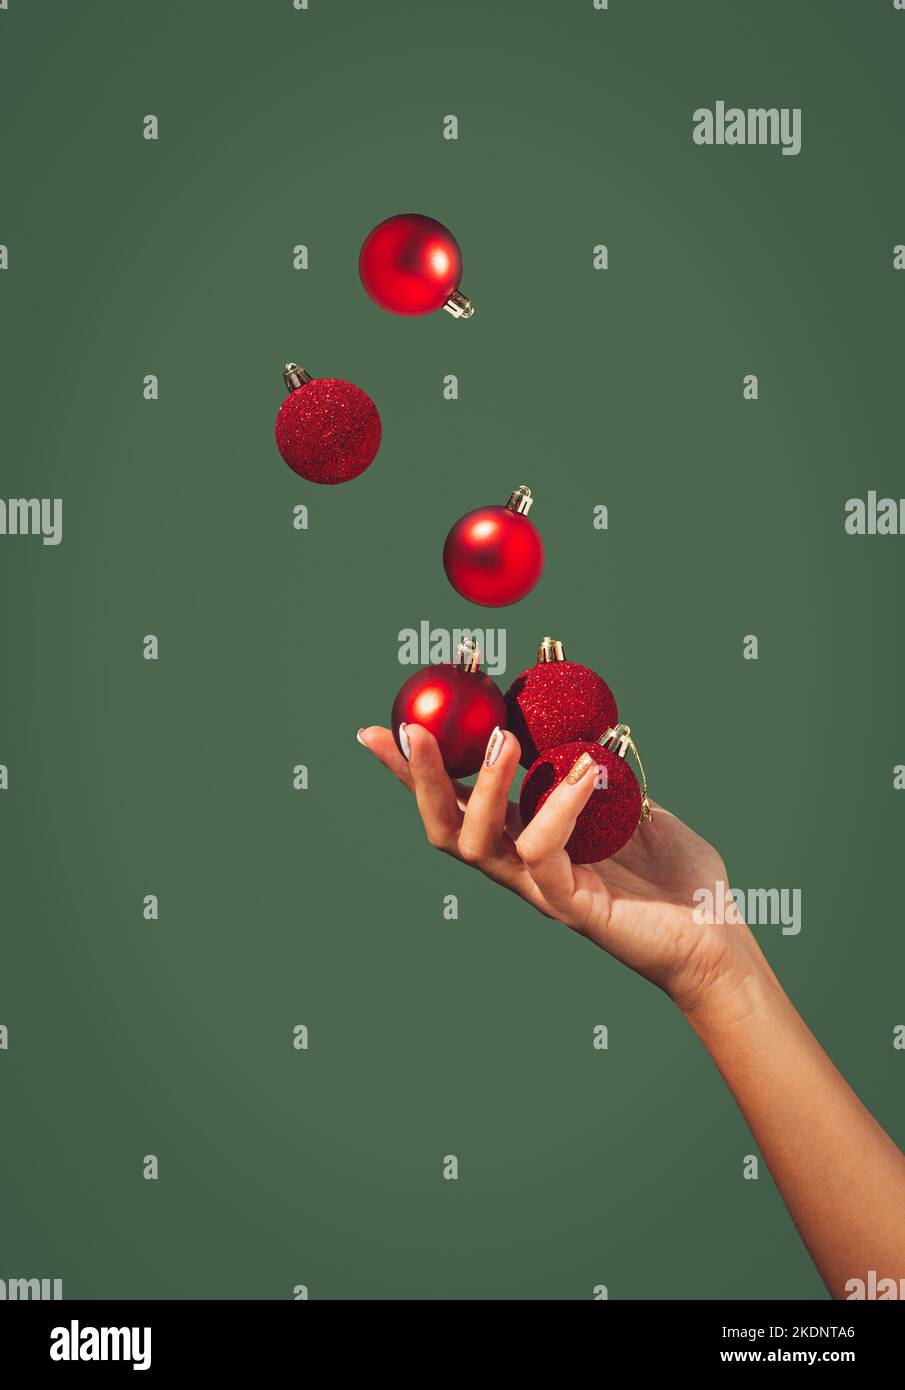 Les boules de Noël juglant à la main d'une belle femme sur fond vert foncé. Concept de vacances minimal. Bonne Année. Copier l'espace. Banque D'Images